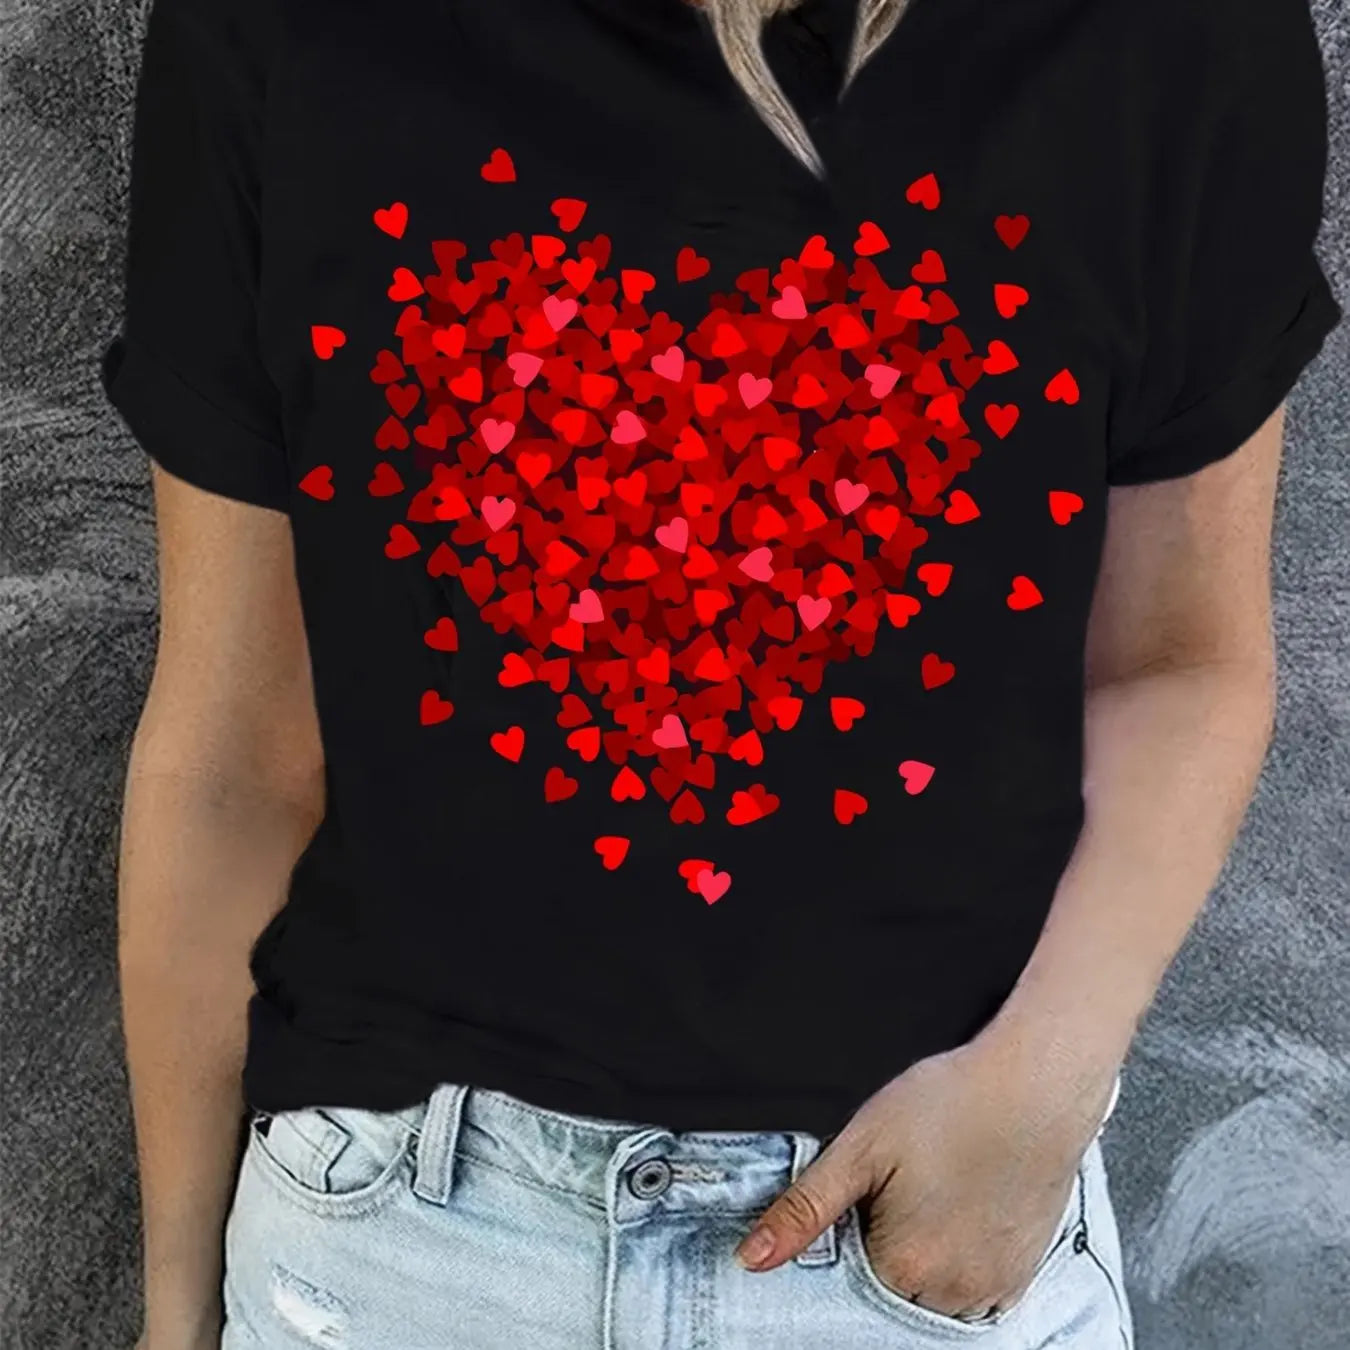 Heart Burst Black T-Shirt For Valentine's Day